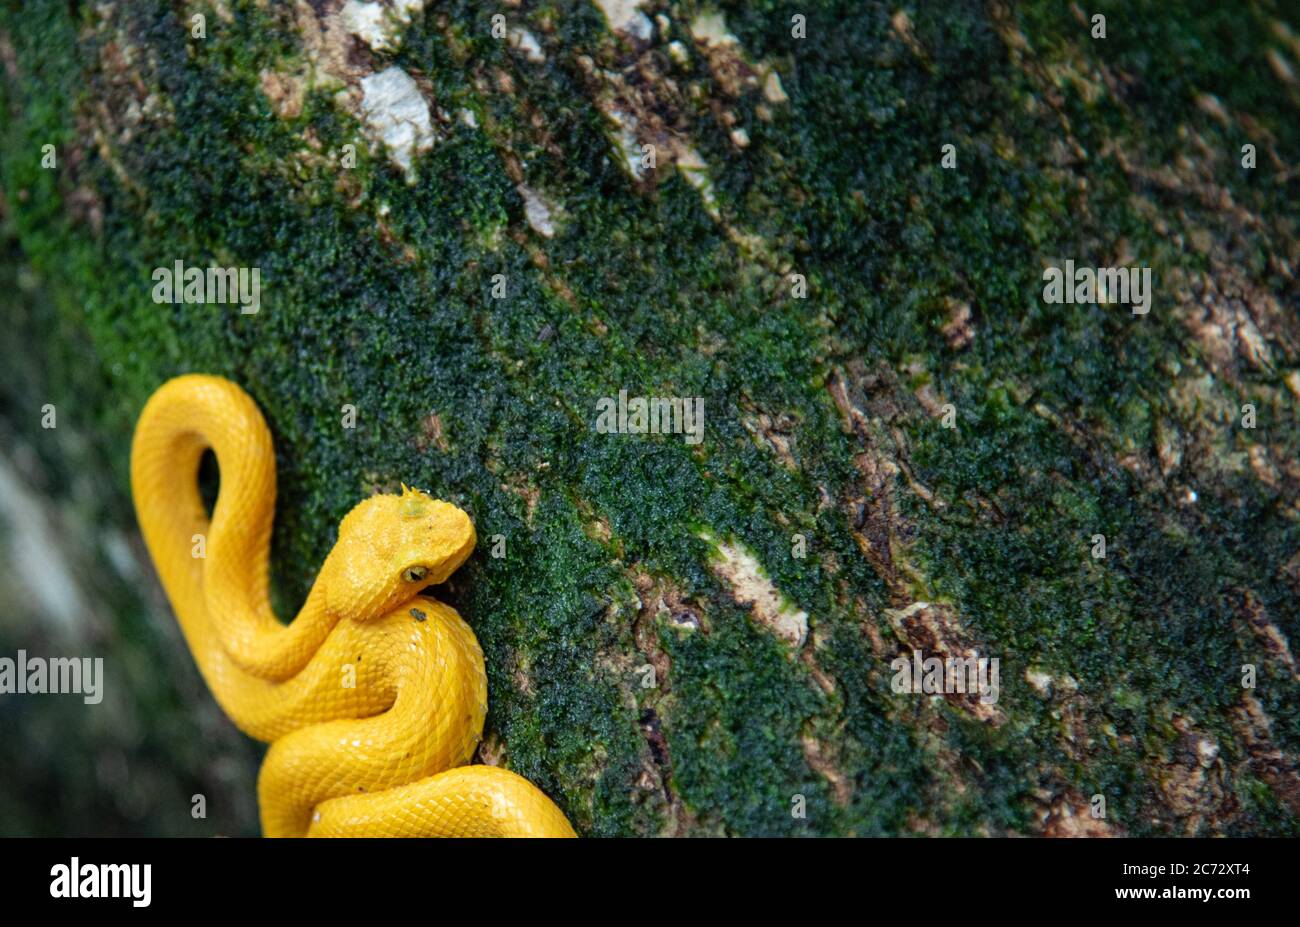 Vipère jaune de la paupière, Bothriechis schlegelii, forêt tropicale du parc national de Cahuita, animal sauvage et dangereux mortel, vipère doré brillant Banque D'Images